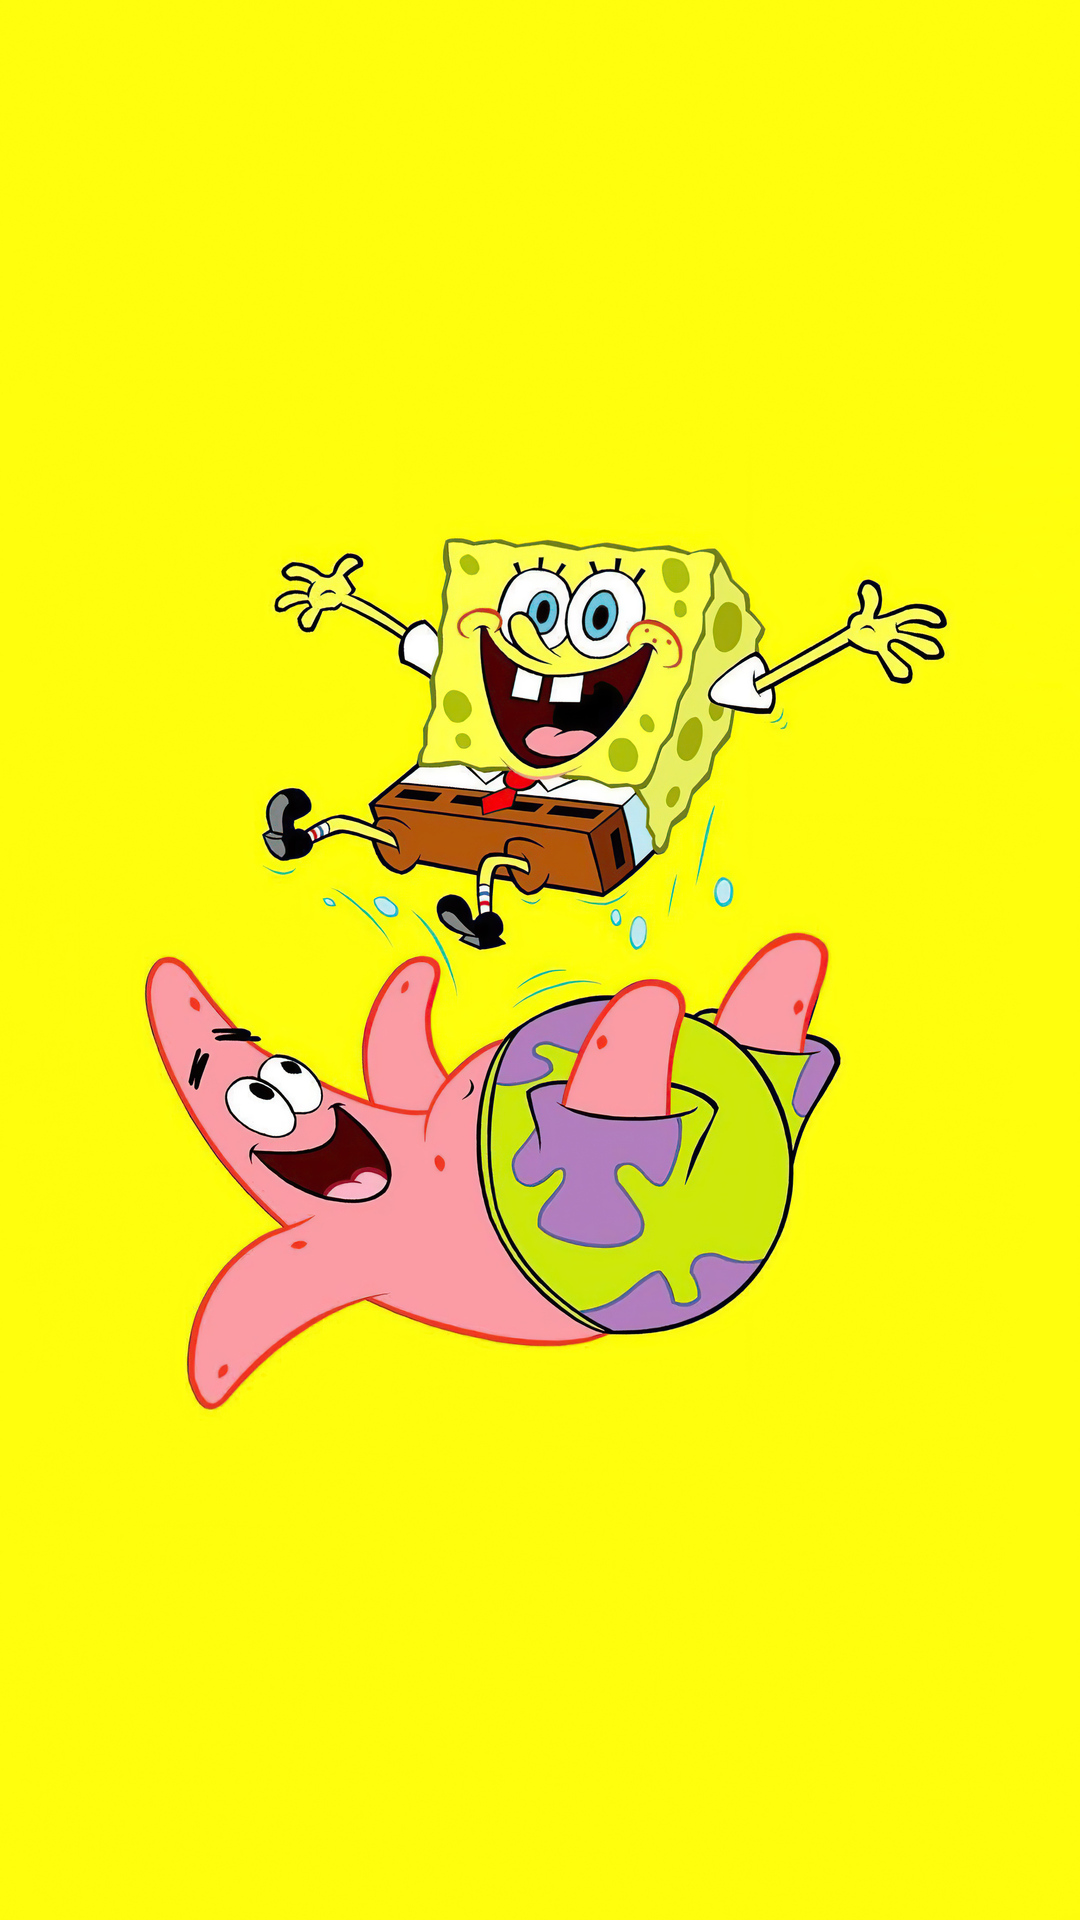 spongebob-and-patrick-minimal-5k-zk.jpg